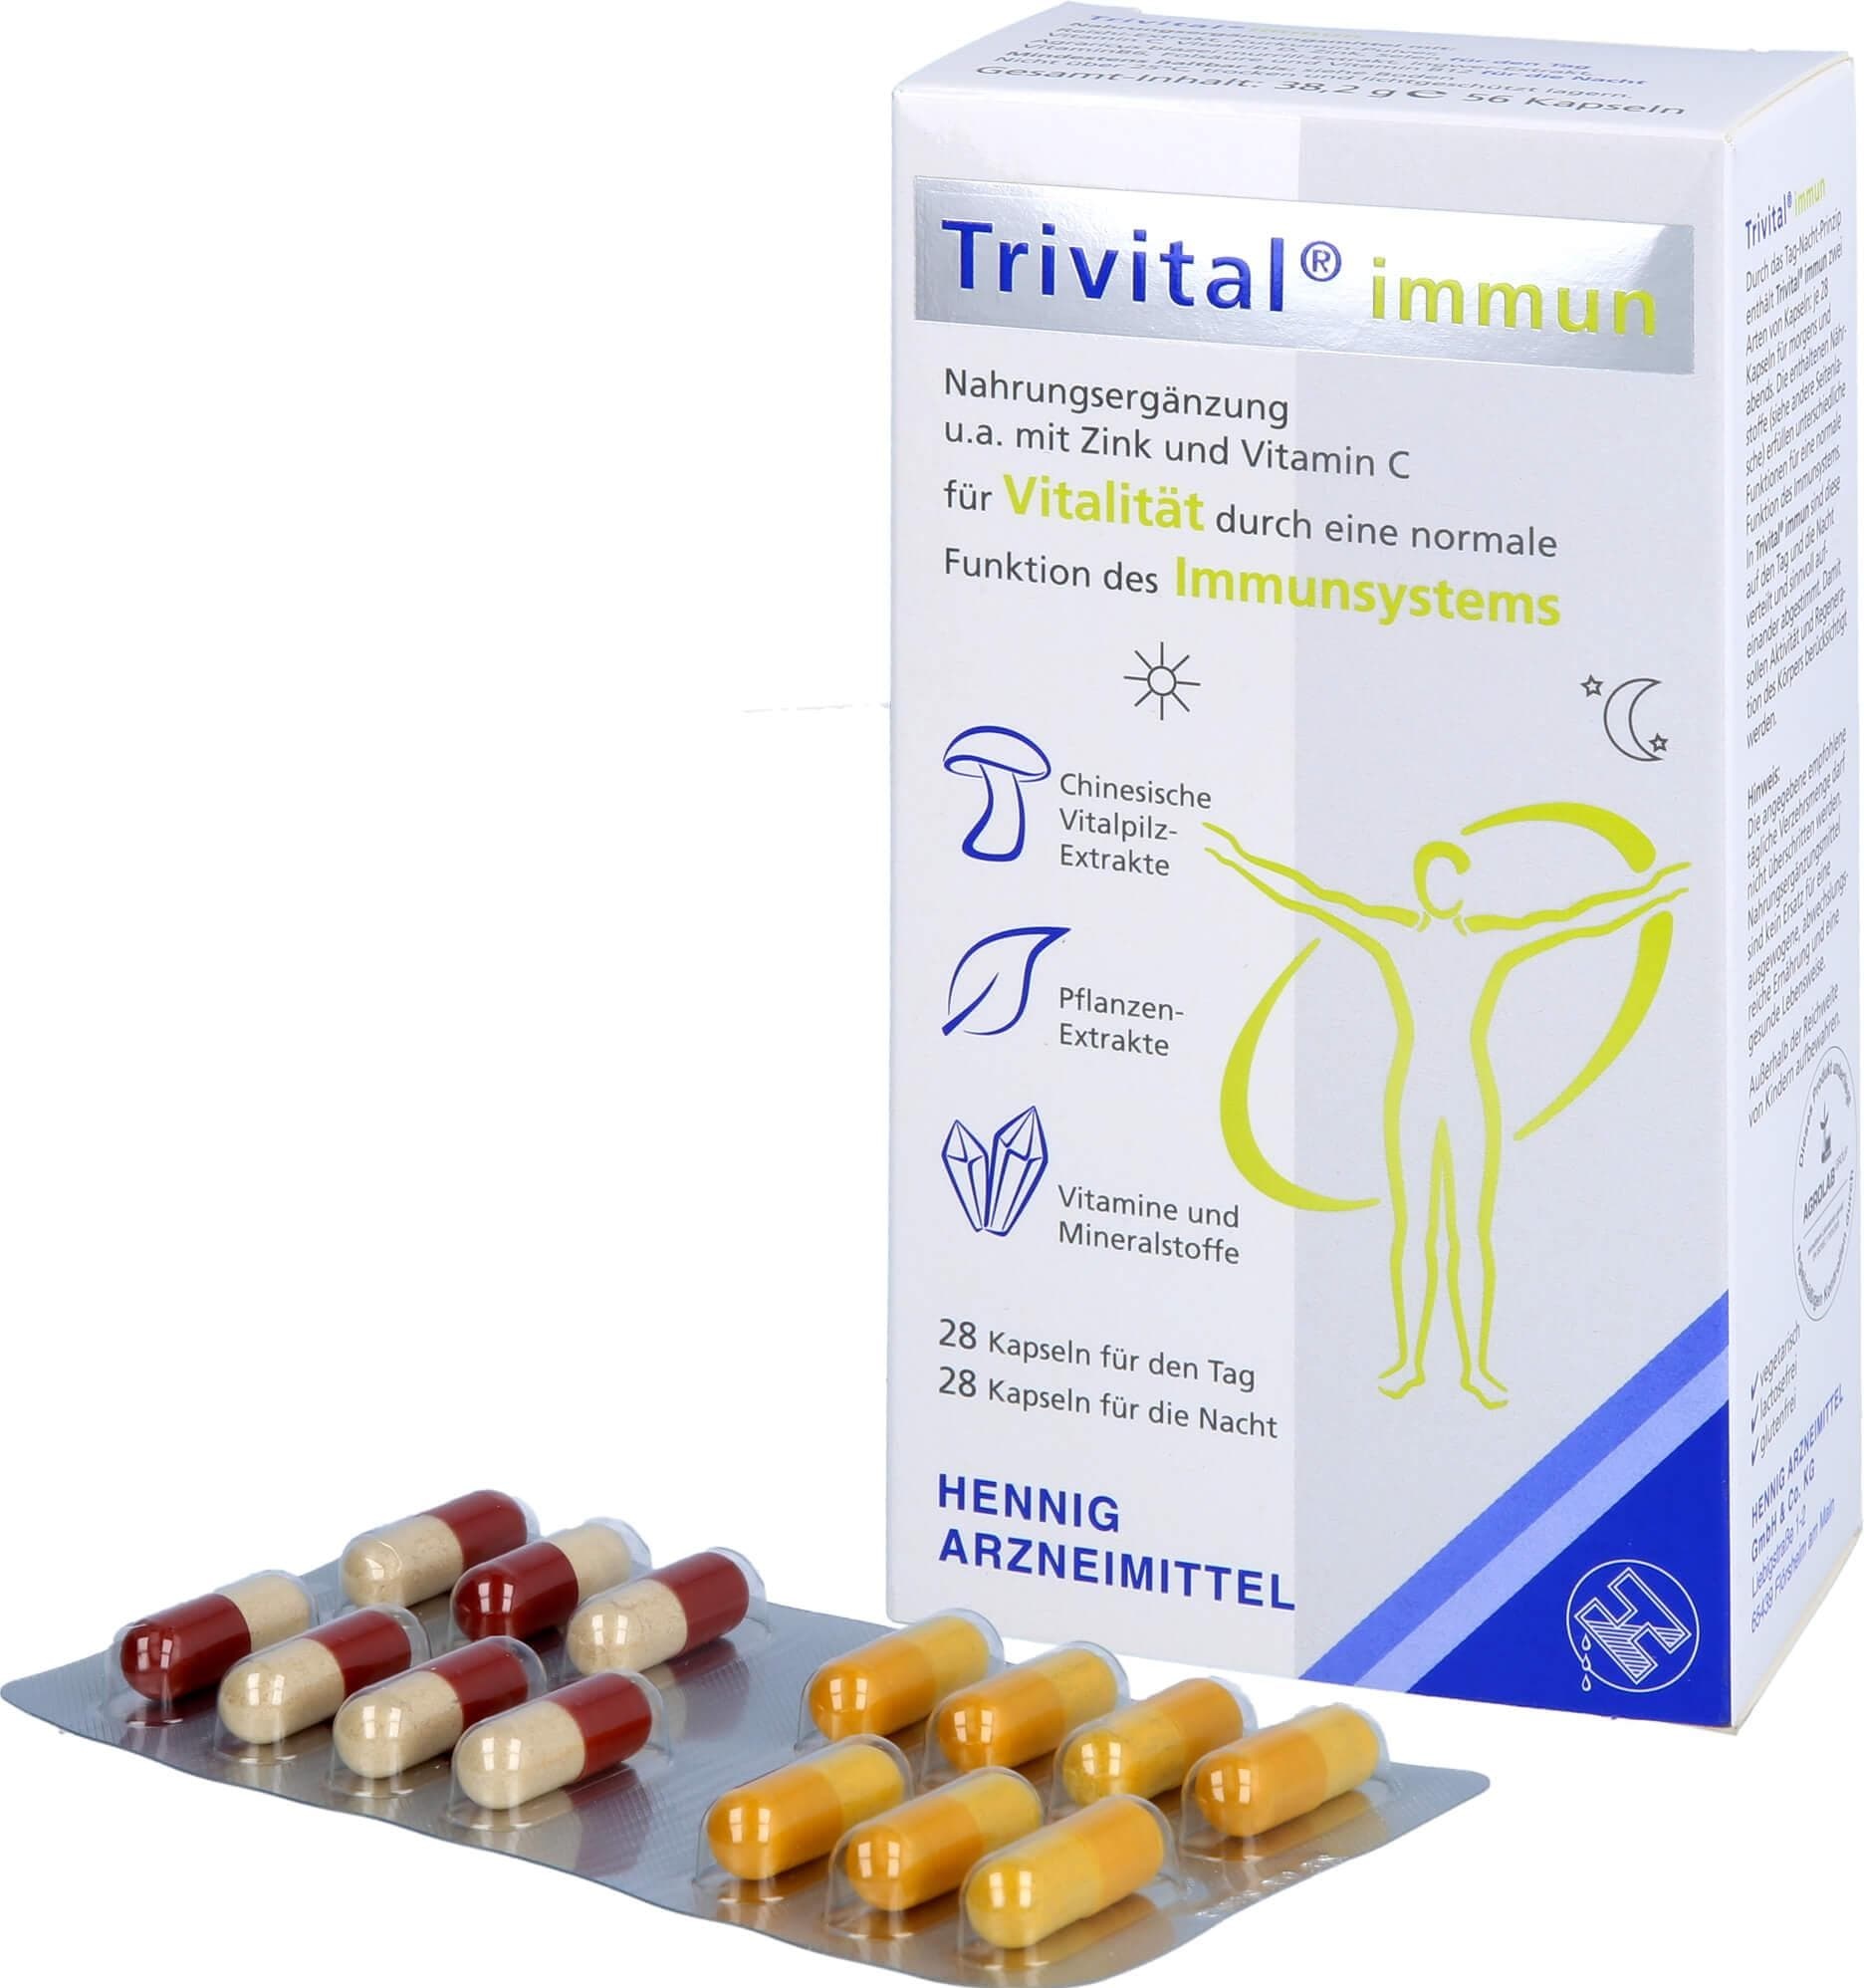 Hennig Arzneimittel, Vitamine + Nahrungsergänzung, Trivital immun, 56 St KAP (56 Stück, Kapseln, 28.20 g)